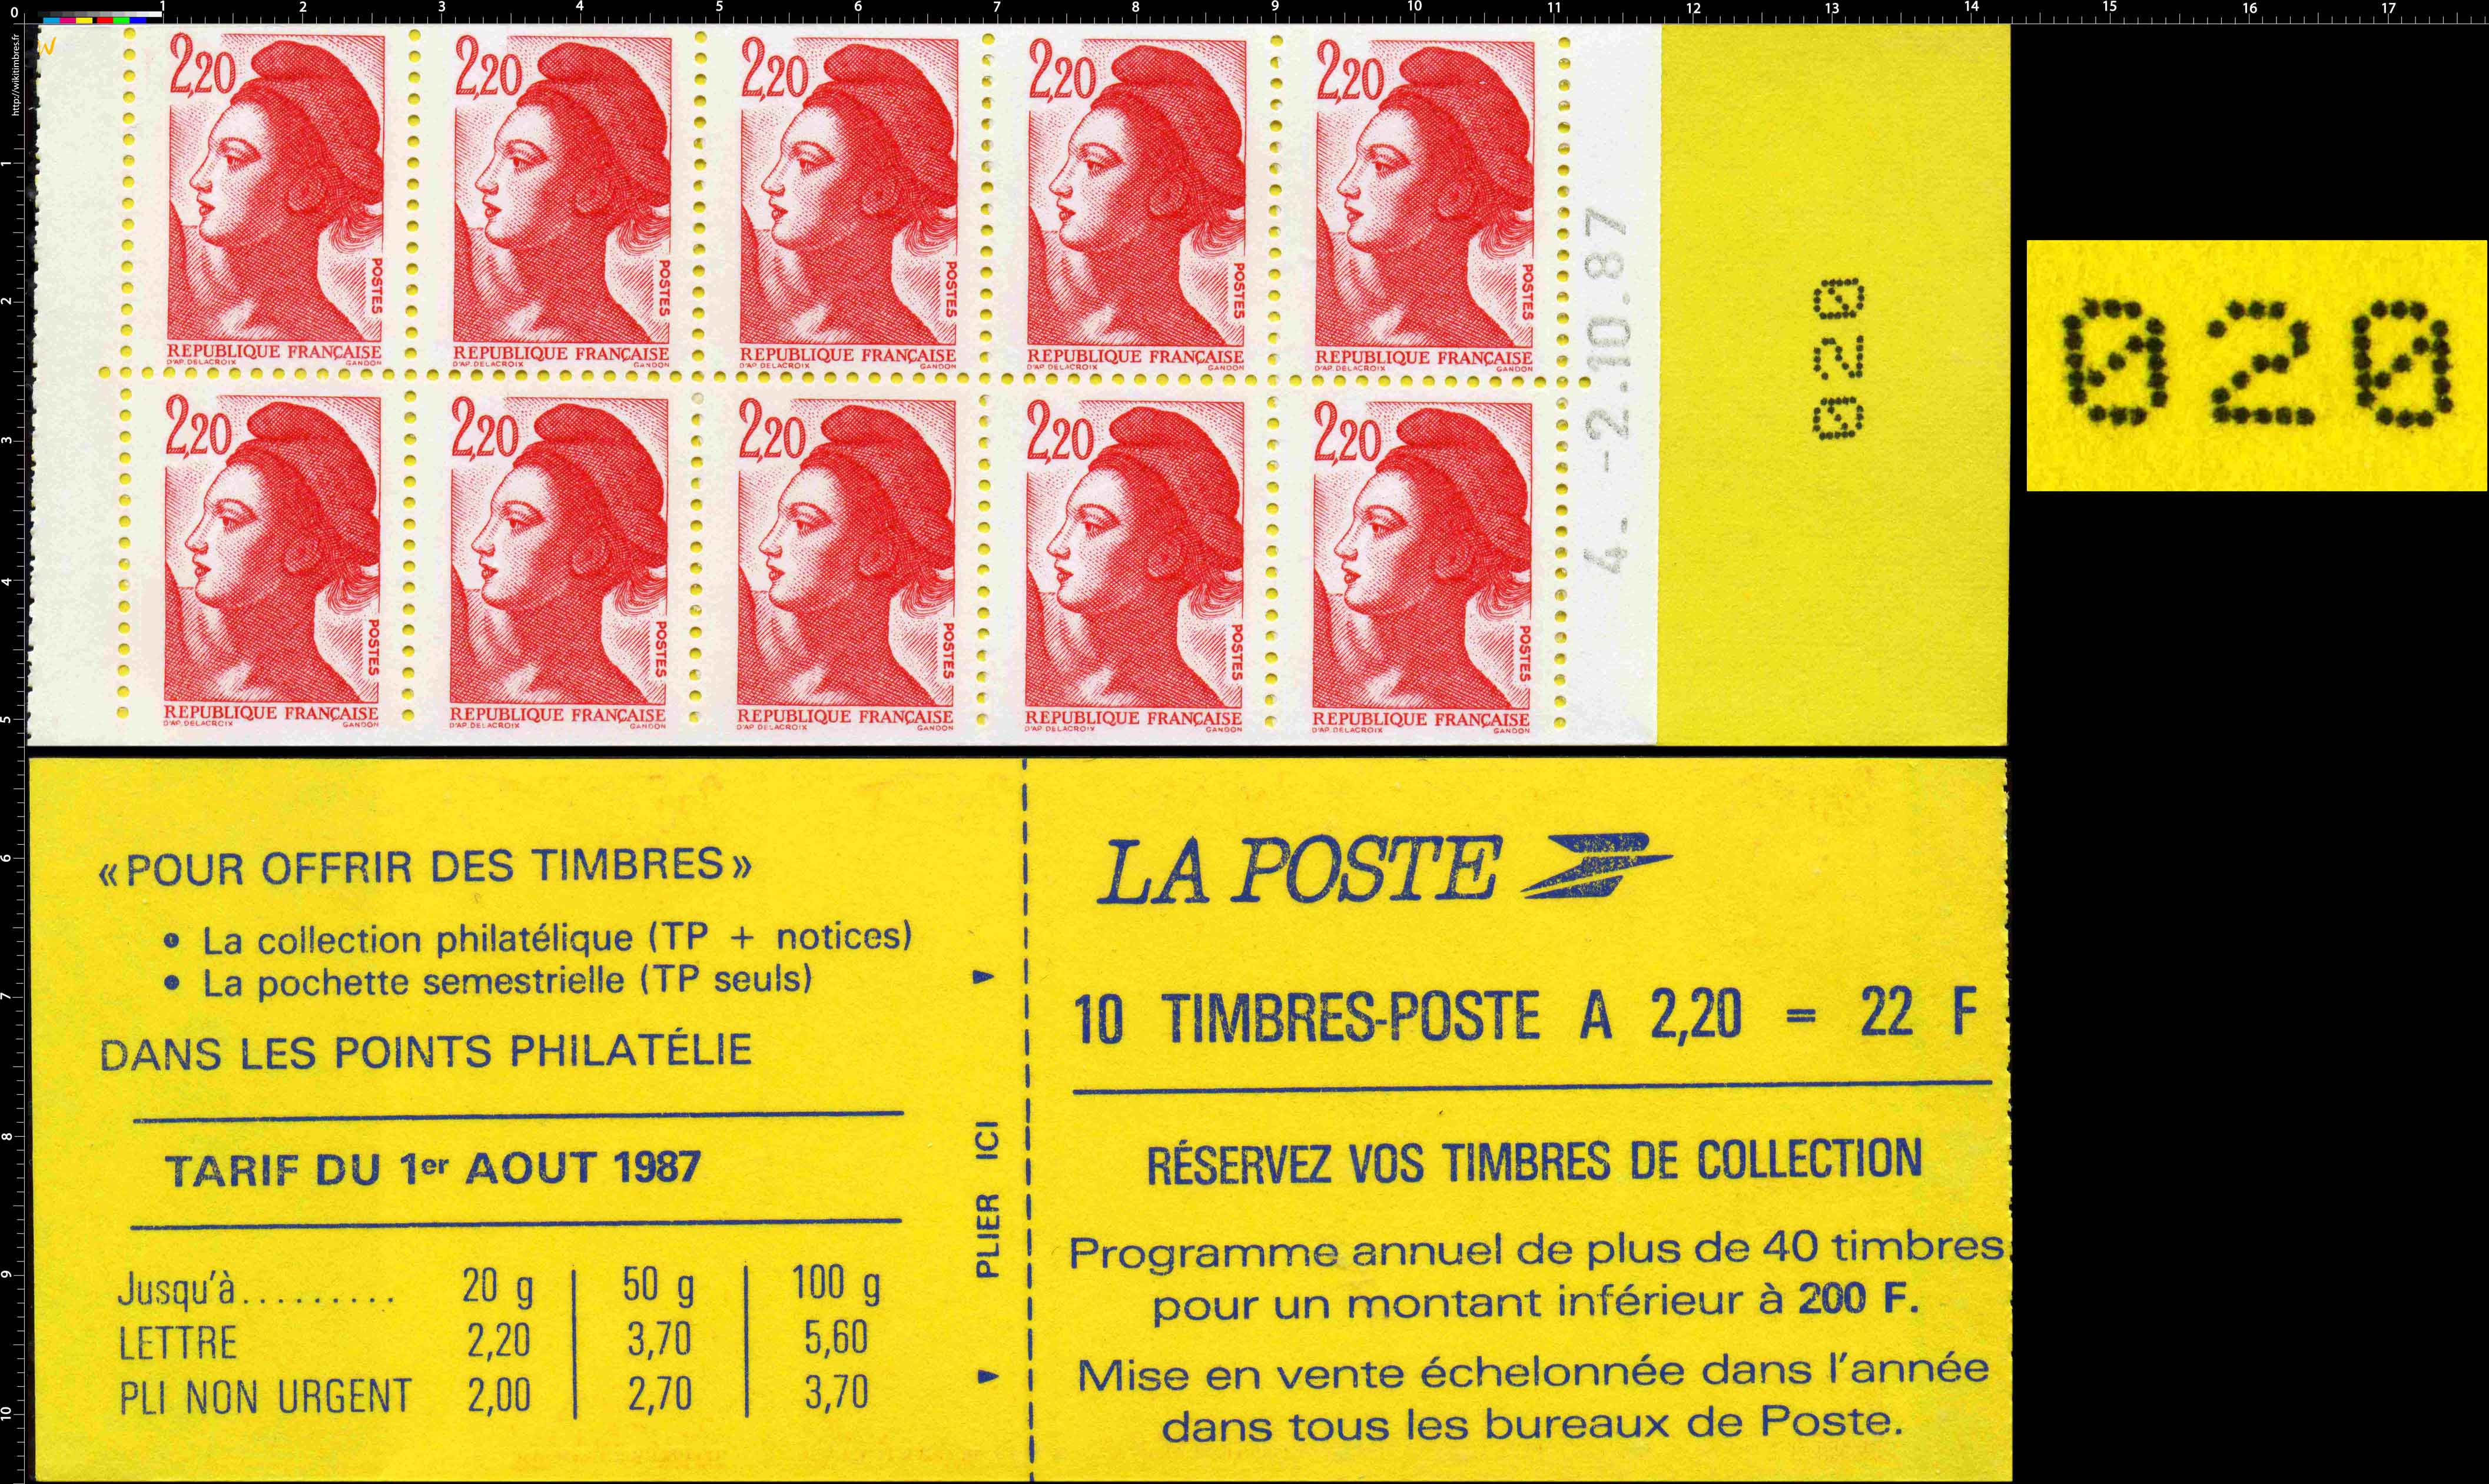 Réservez vos timbres de collection